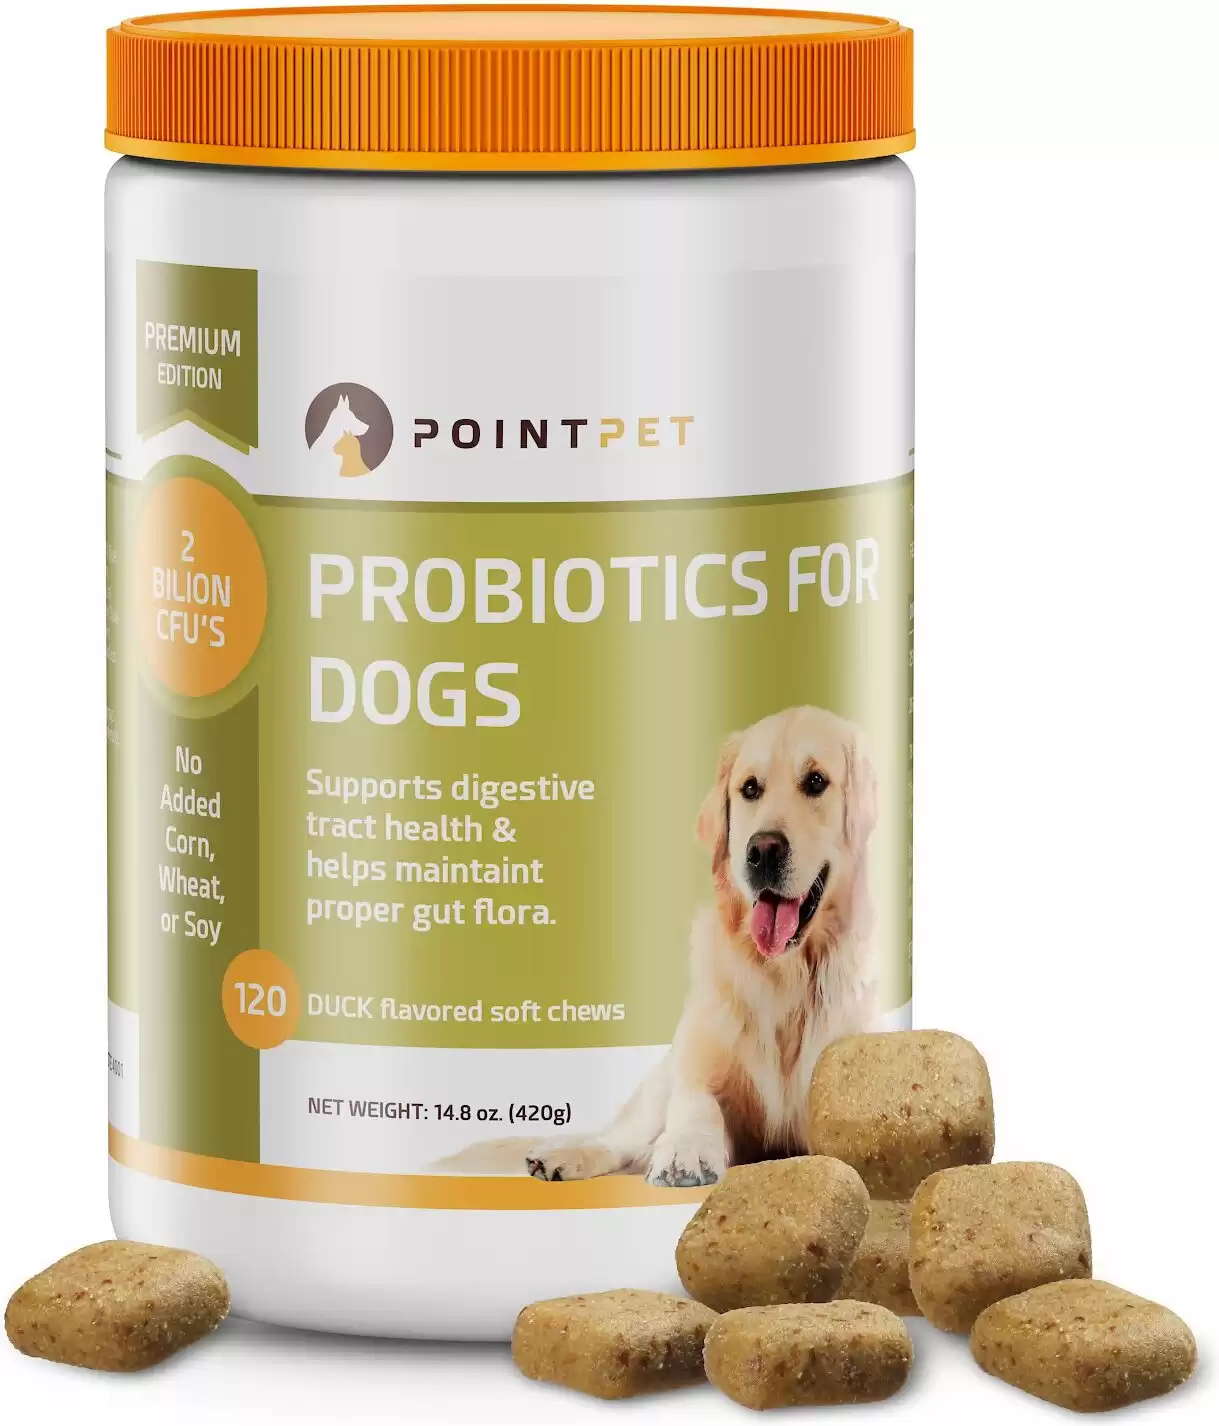 PointPet Digestive Health & Probiotics Dog Supplement